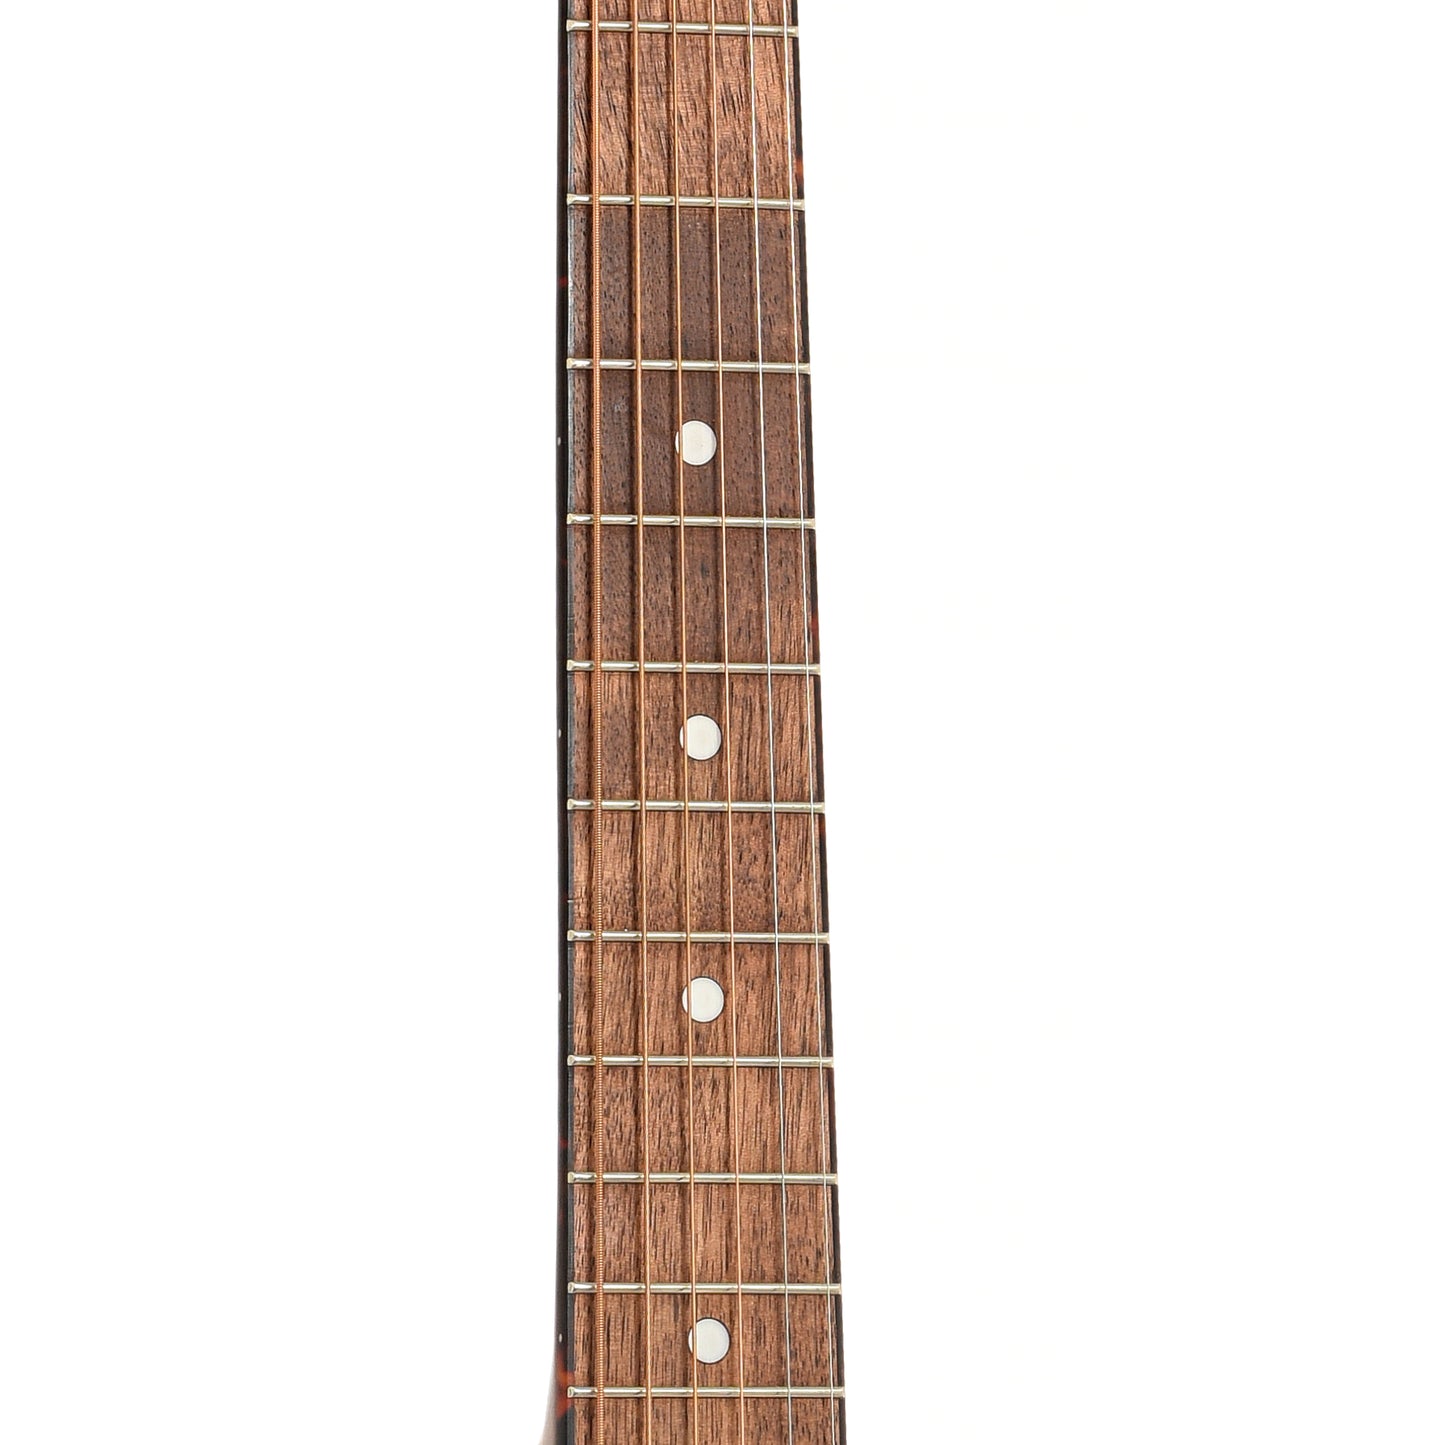 Fretboard of Gretsch Jim Dandy Deltoluxe Dreadnought Acoustic/Electric Guitar, Black Top